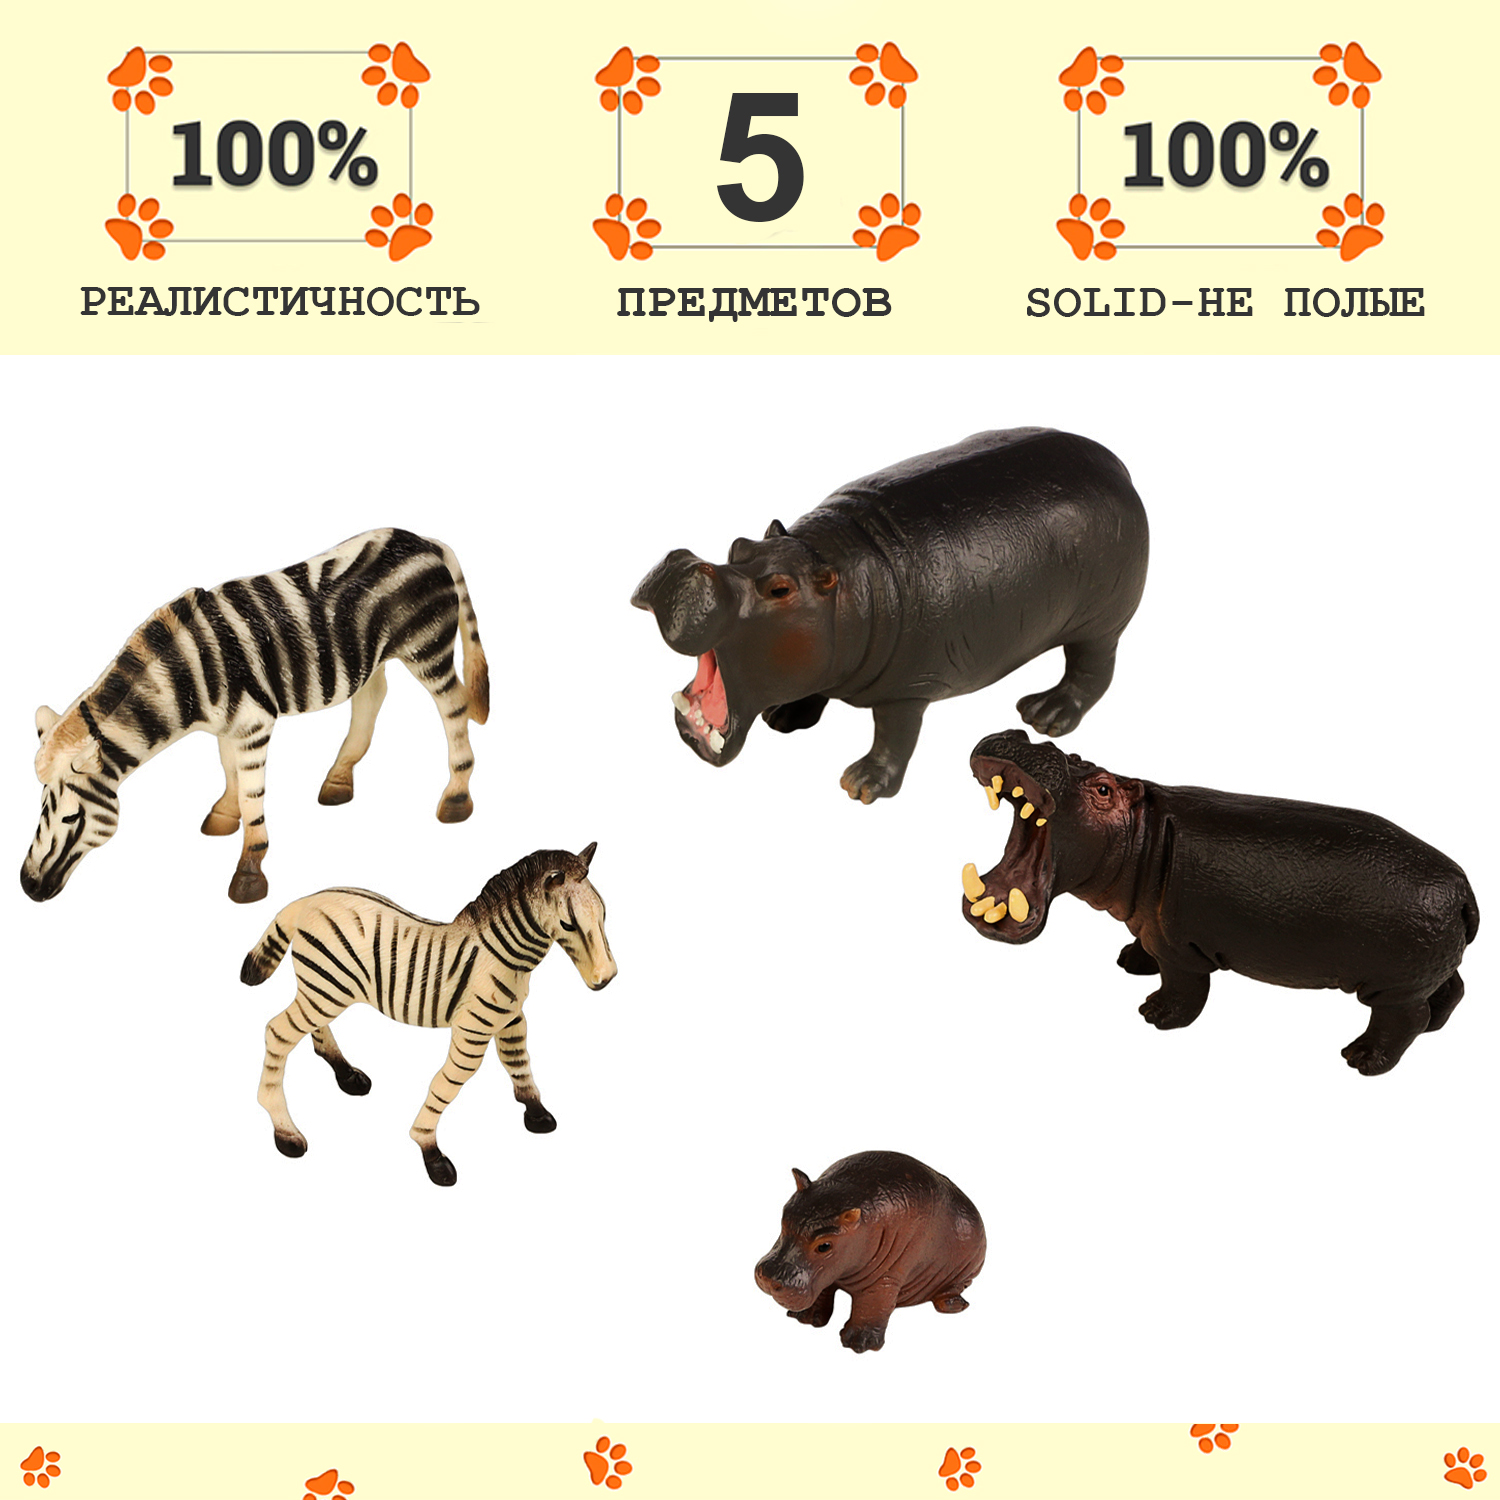 Набор фигурок Masai Mara: Семья бегемотов и семья зебр, 5 предметов MM211-289 masai mara набор фигурок мир диких животных семьи ягуаров и семья медведей 8 предметов